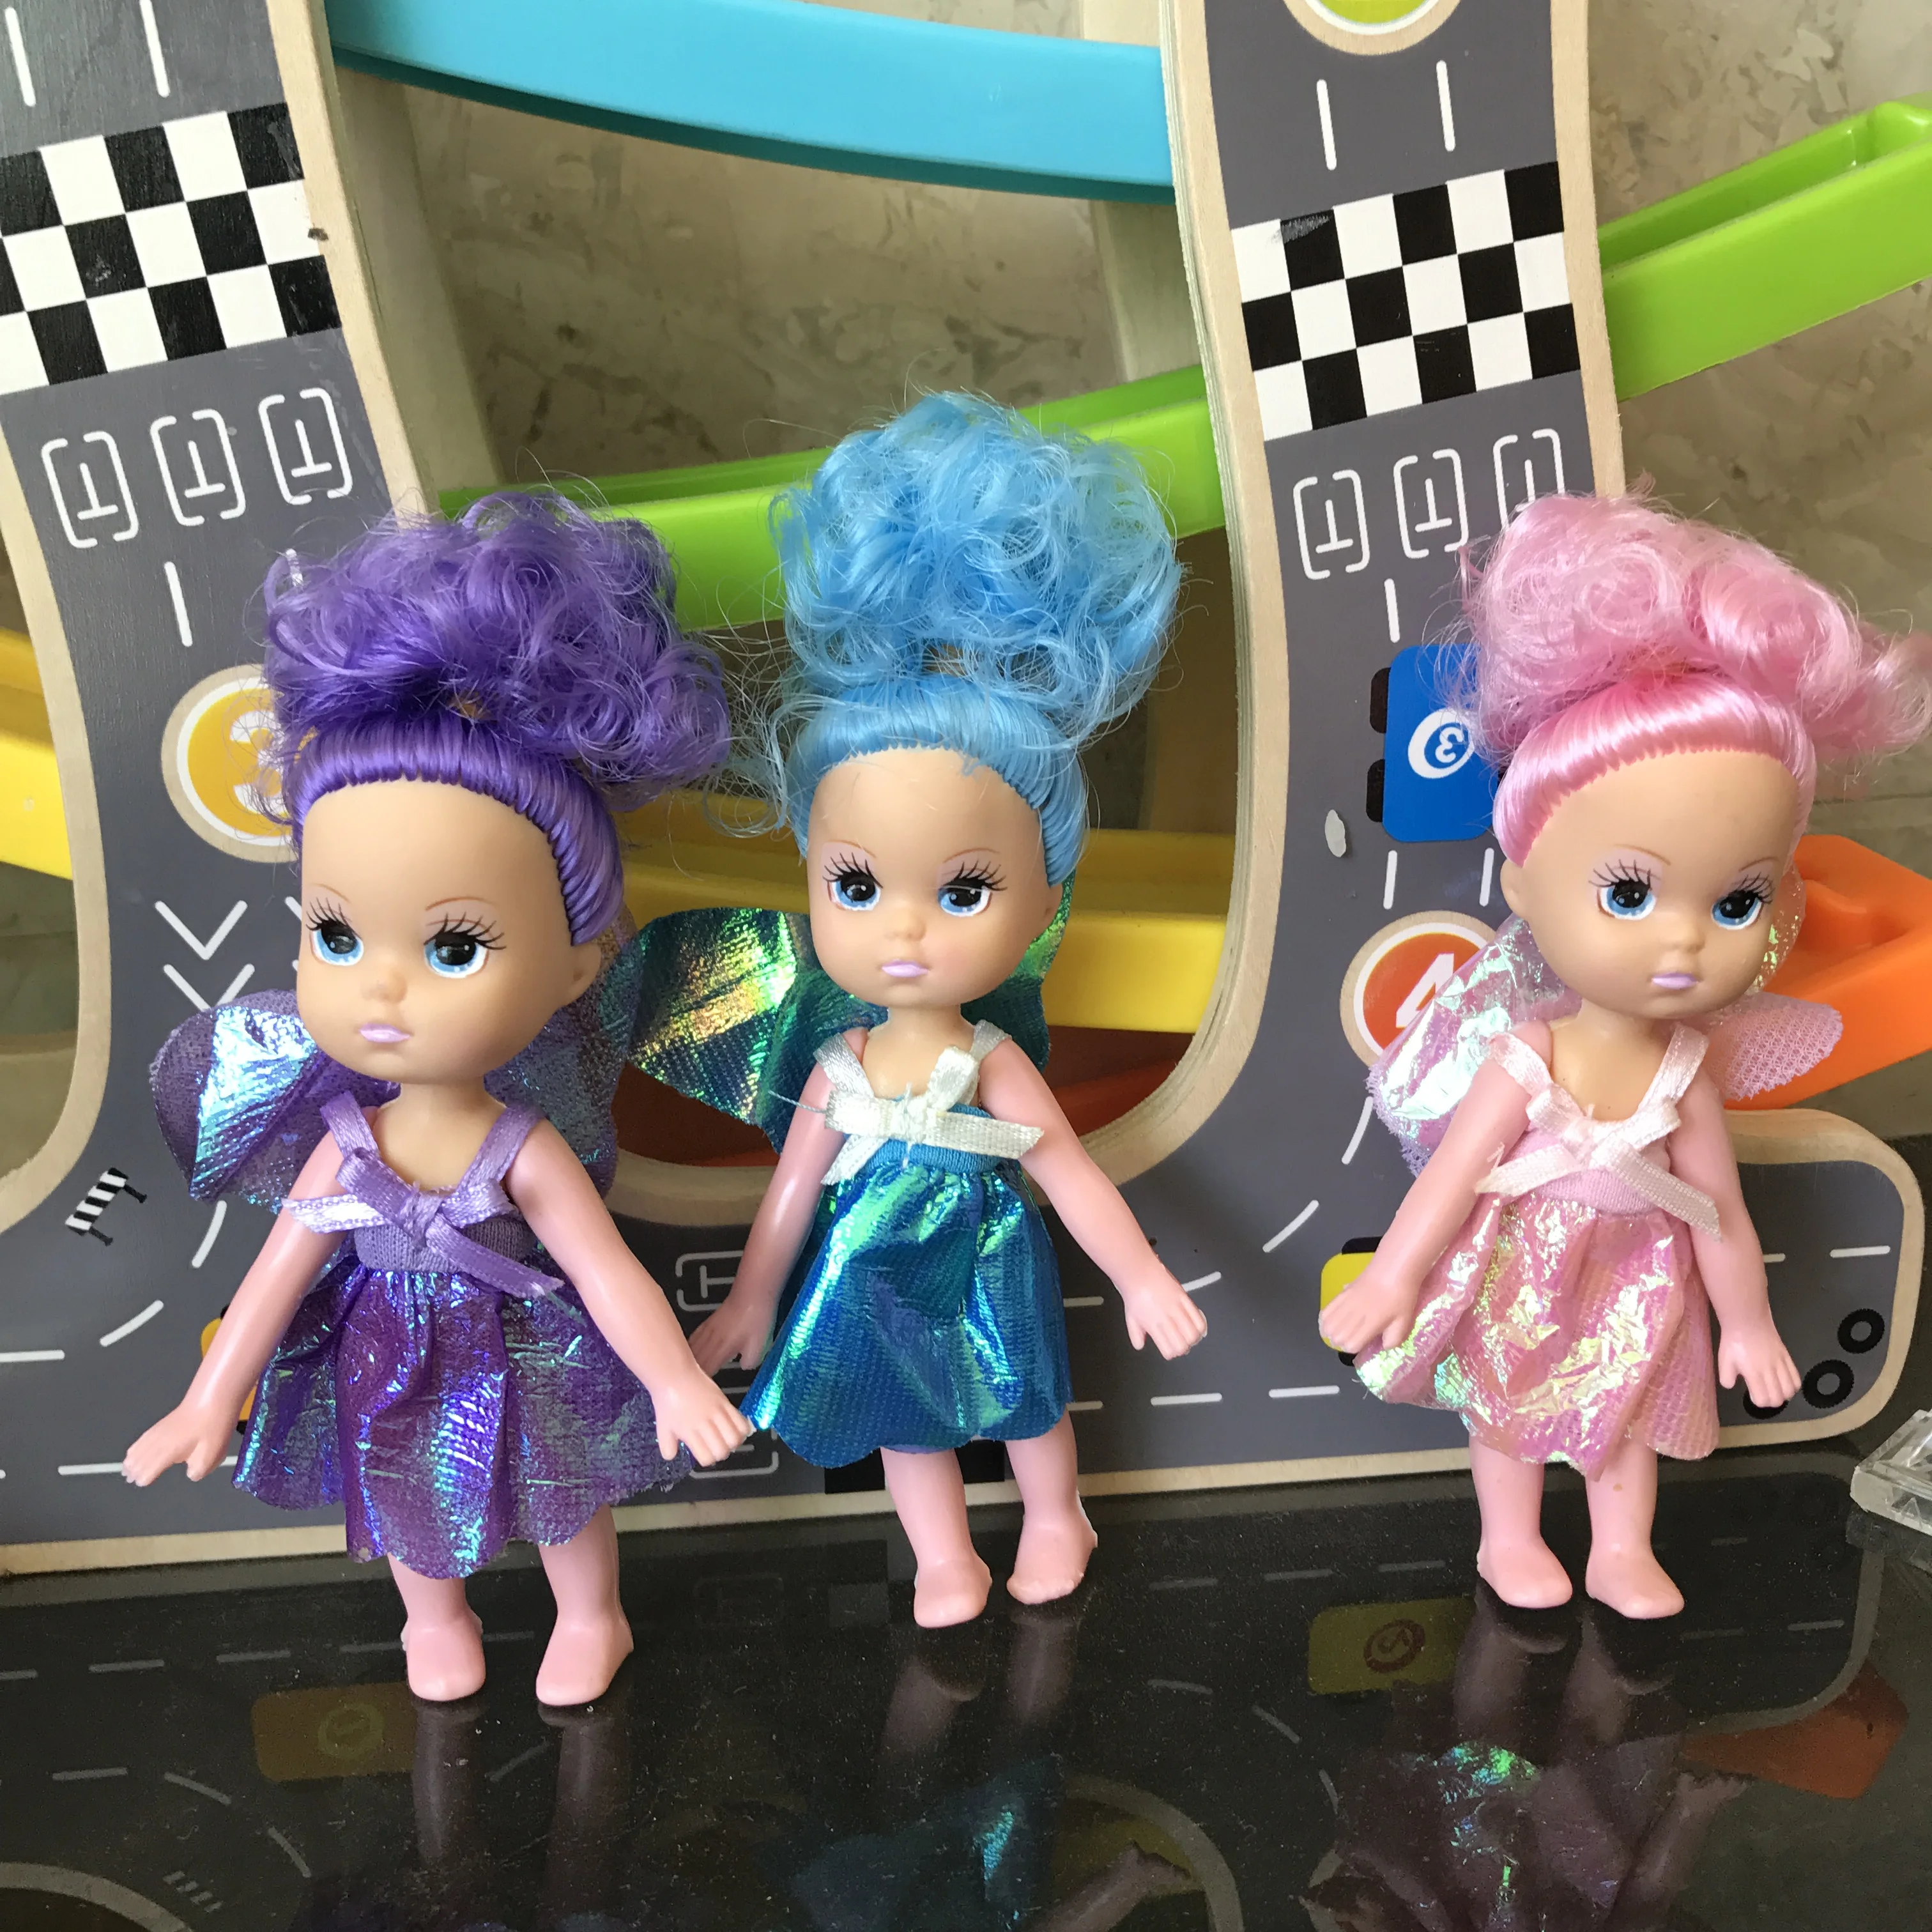 15 см пластиковая игрушка маленькая Келли моделирование кукла девочка принцесса детские игрушки куклы для девочек